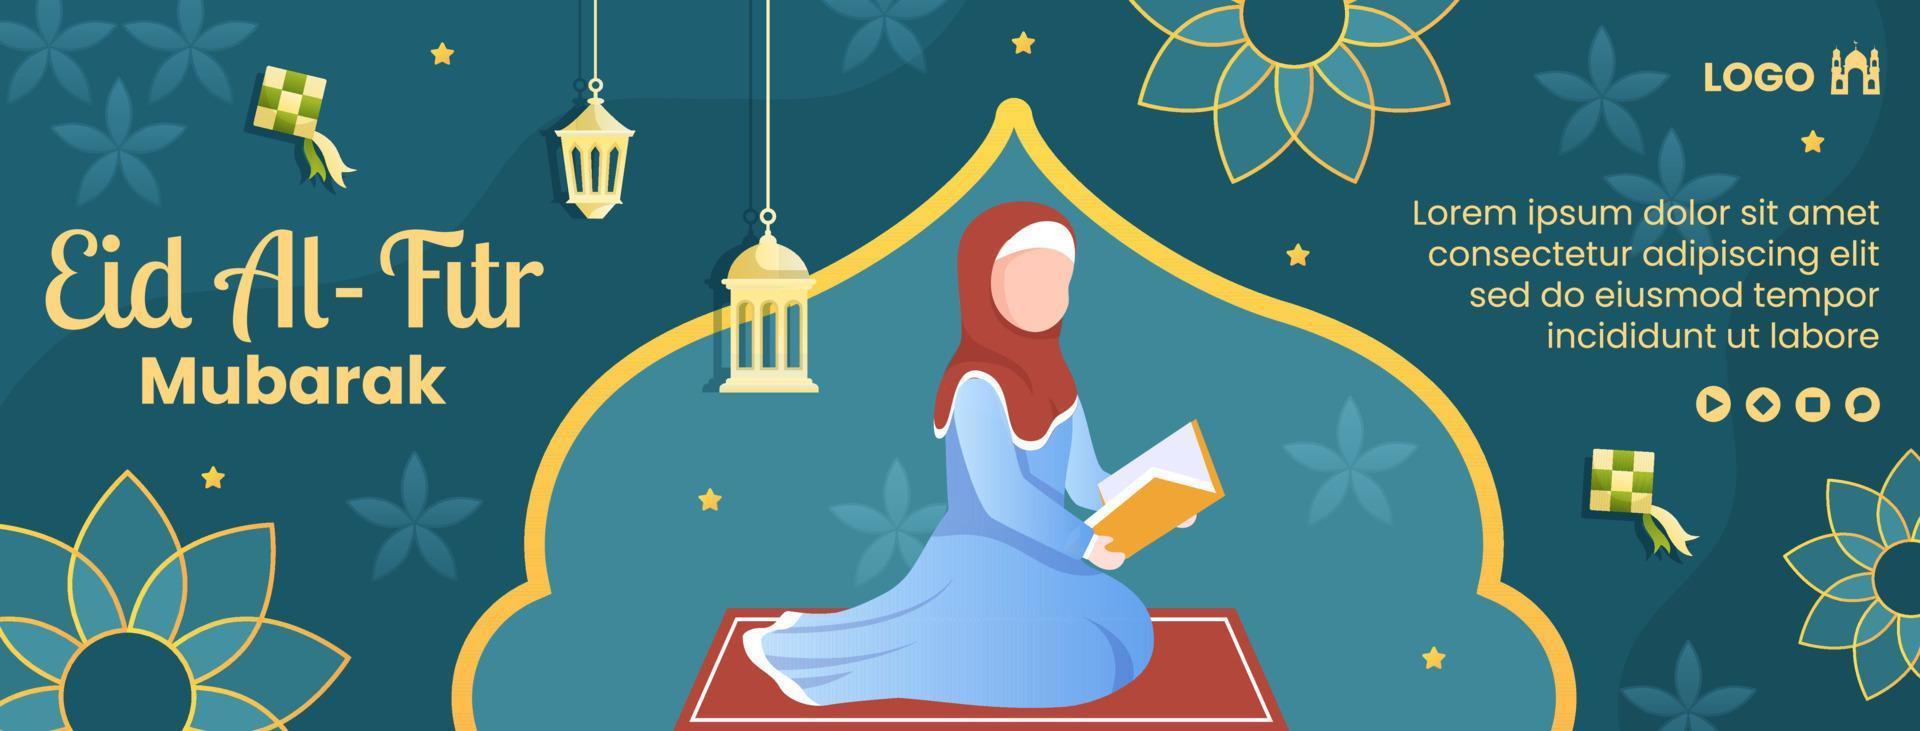 gelukkige eid al-fitr mubarak voorbladsjabloon platte ontwerp illustratie bewerkbare vierkante achtergrond voor sociale media, poster ot wenskaart vector